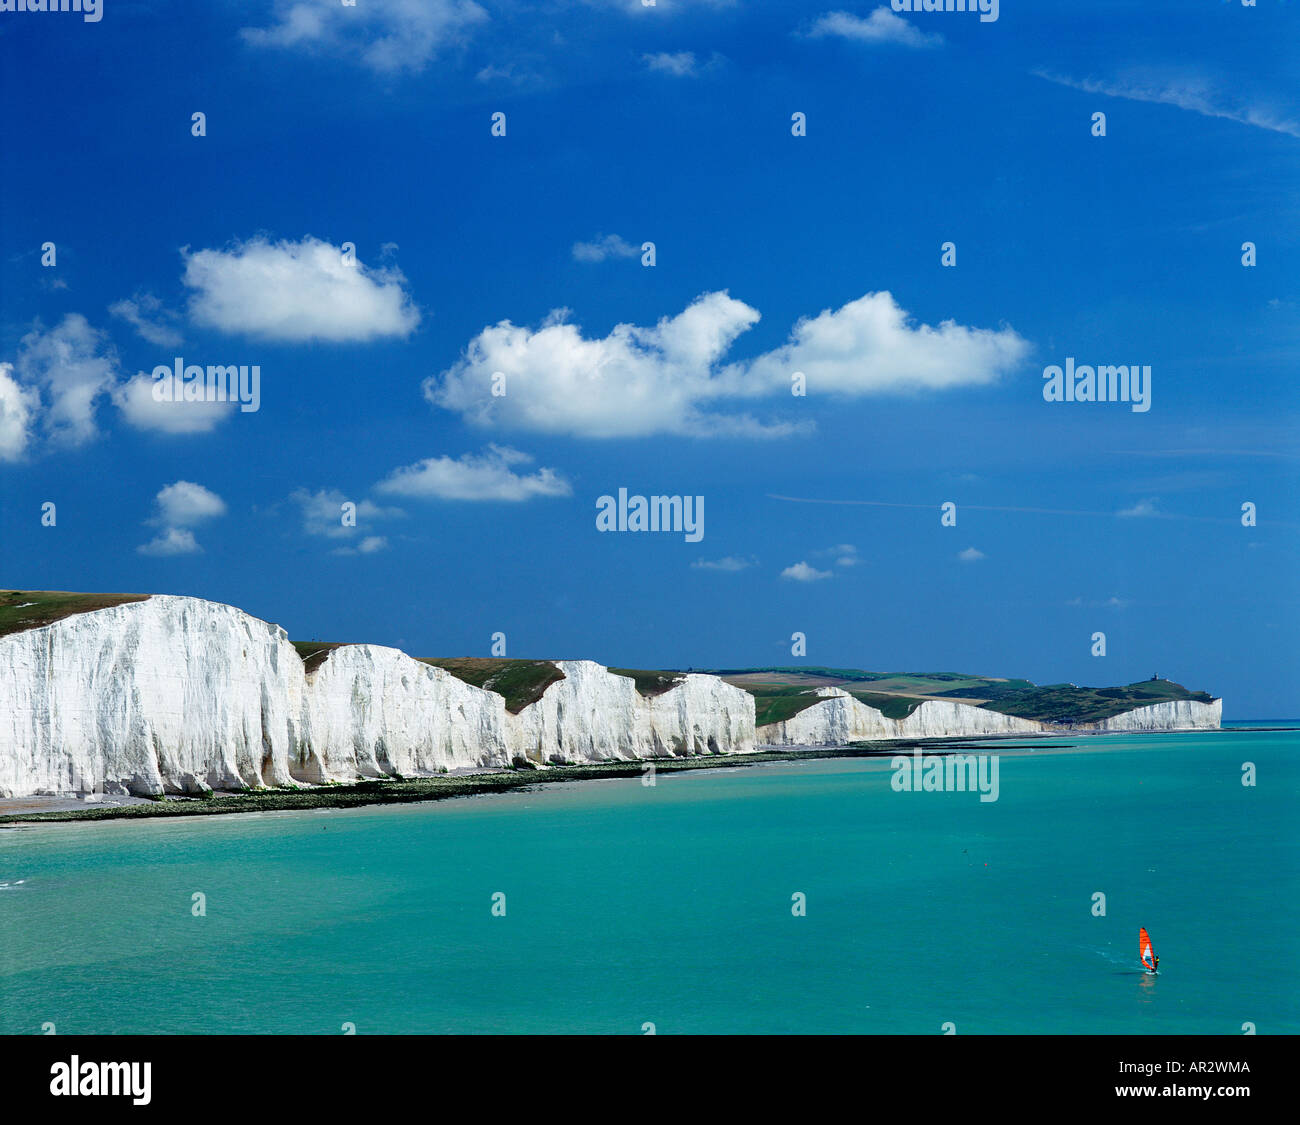 Le scogliere di gesso bianco della costa delle sette sorelle, Sussex, Inghilterra, Regno Unito, Gran Bretagna, UK, GB, con un windsurf in primo piano. Foto Stock